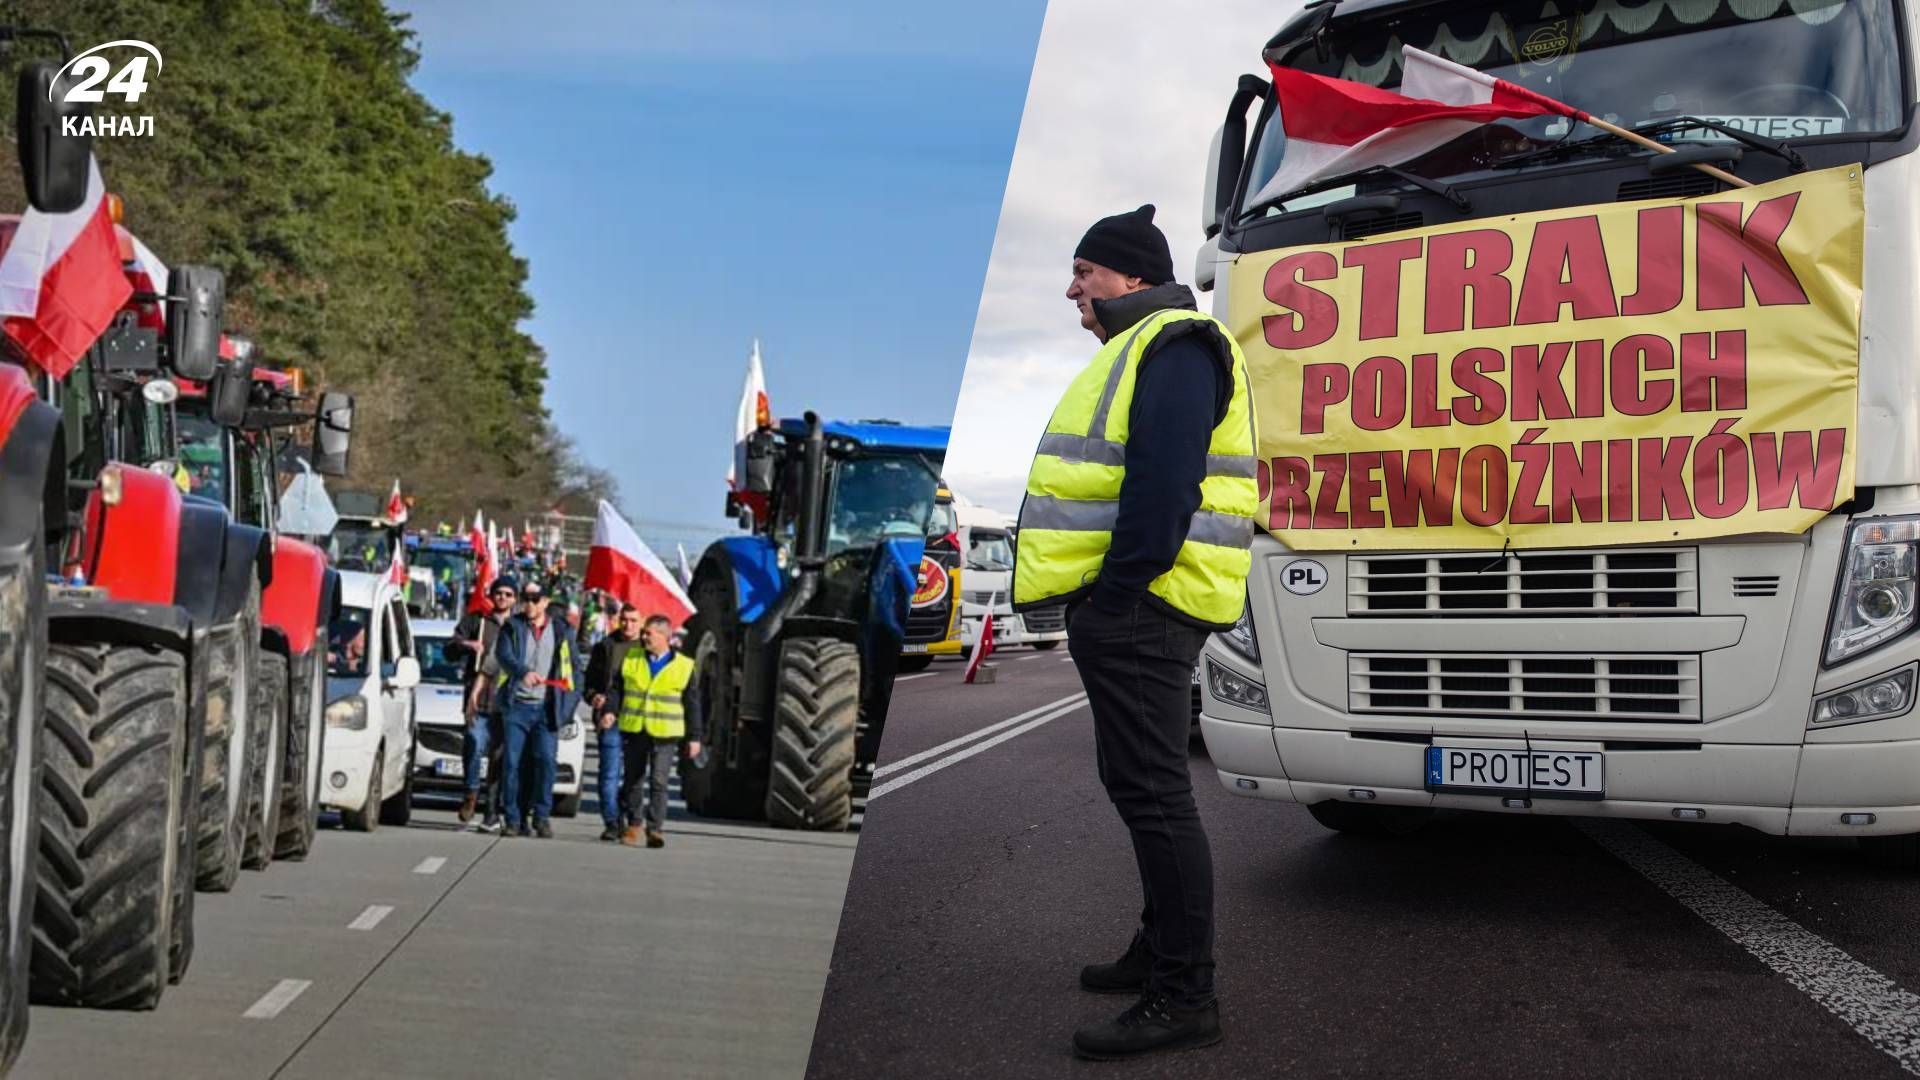 Польскі фермери розпочали блокування кордону із Німеччиною - 24 Канал